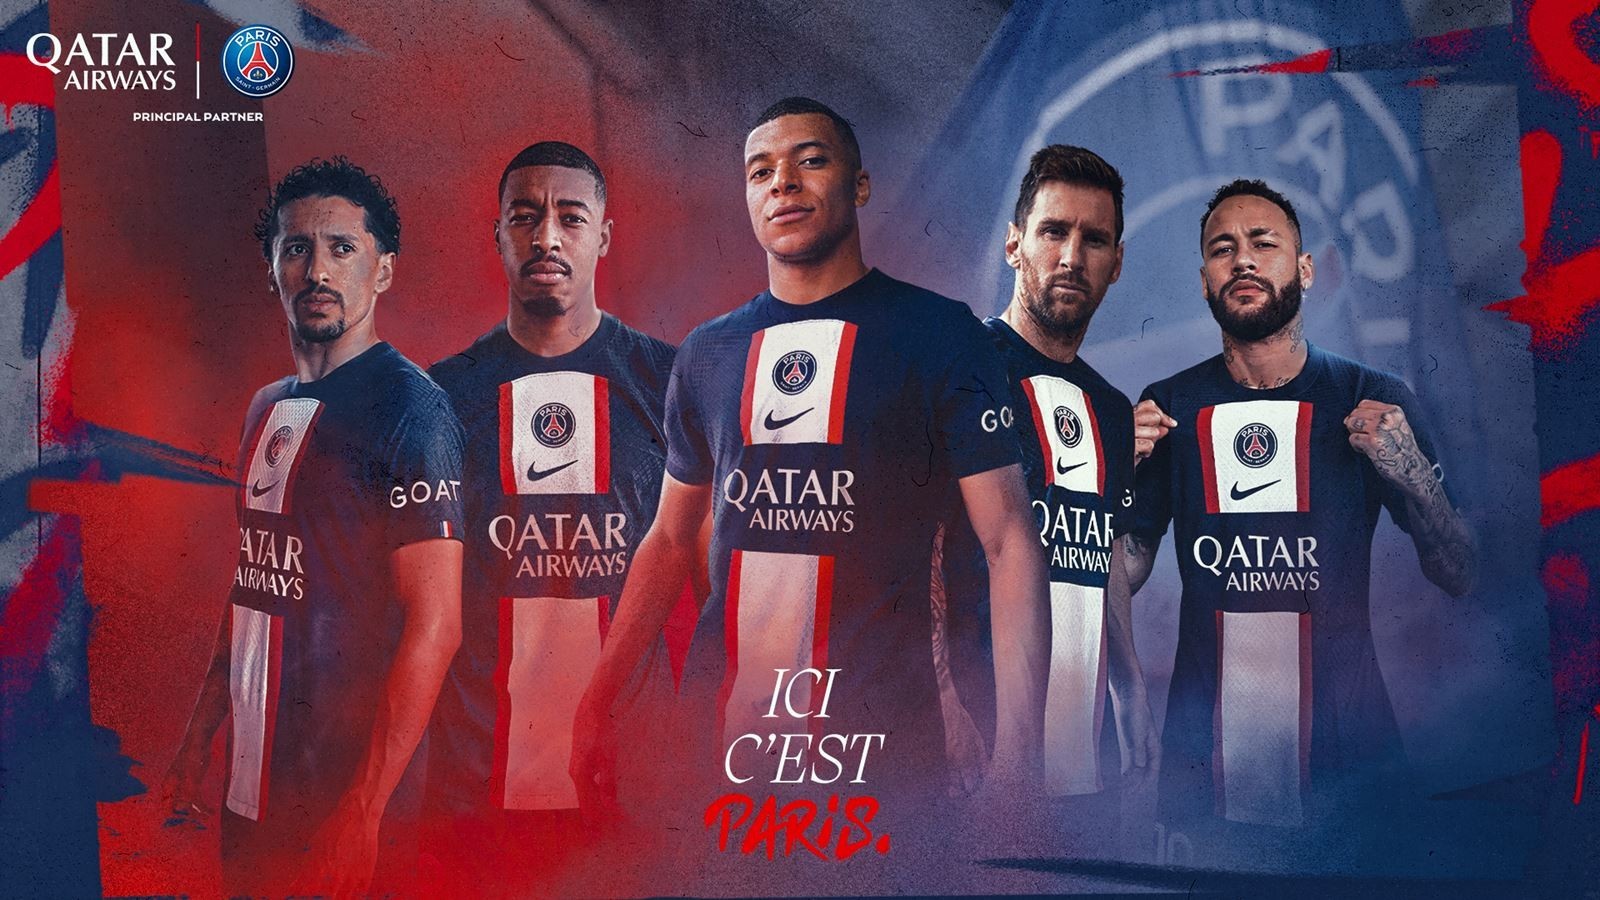 卡塔尔航空成为大巴黎球衣胸前广告商